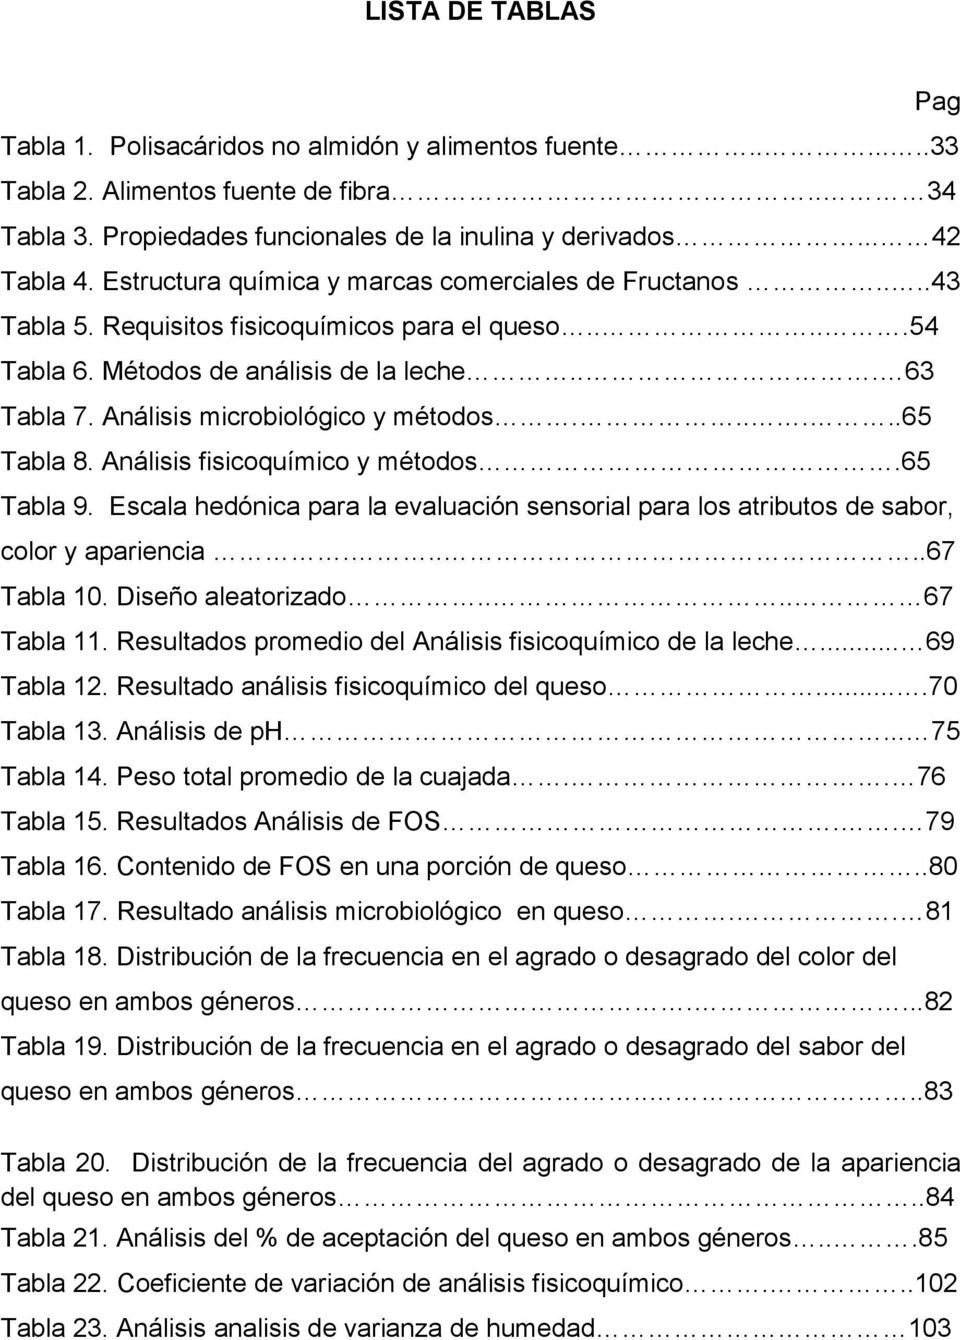 Análisis microbiológico y métodos......65 Tabla 8. Análisis fisicoquímico y métodos.65 Tabla 9. Escala hedónica para la evaluación sensorial para los atributos de sabor, color y apariencia.